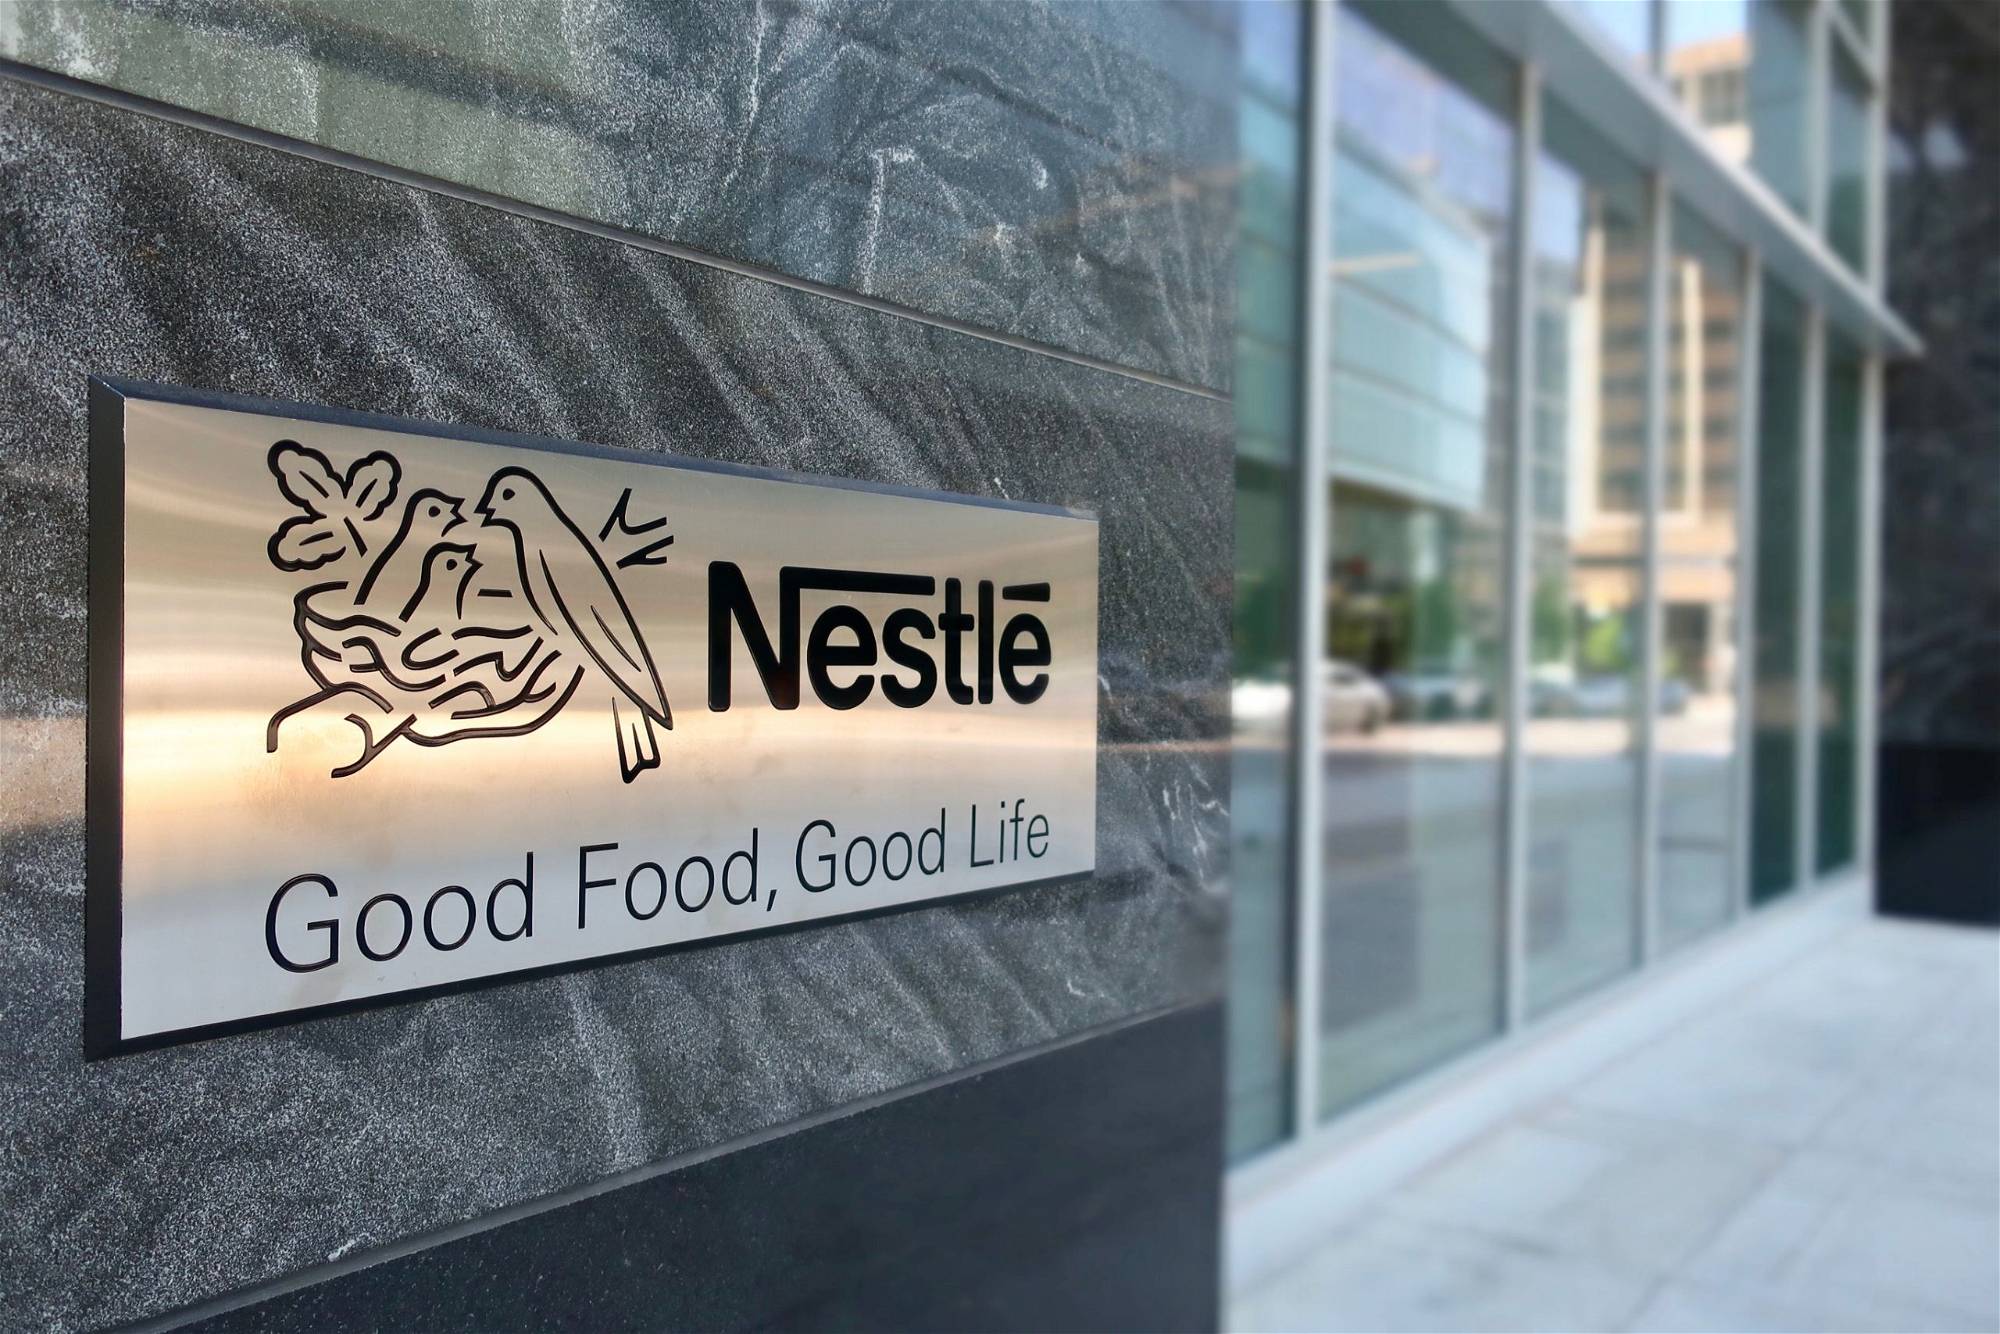 Nestle-Aktie: Sollten Sie jetzt kaufen?